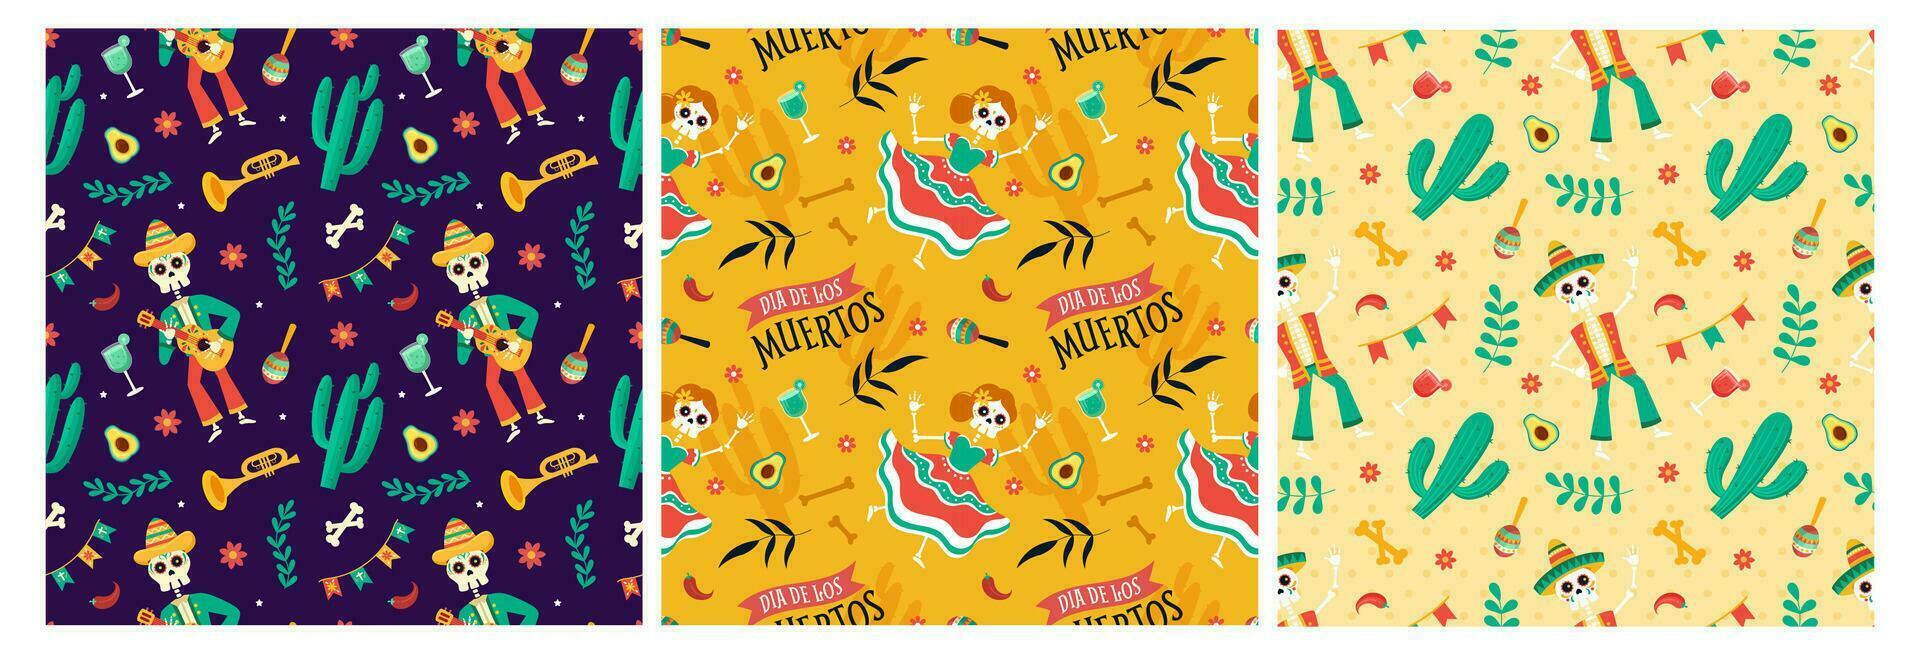 uppsättning av dia de muertos sömlös mönster illustration med dag av de död- och skelett element i mexikansk design vektor